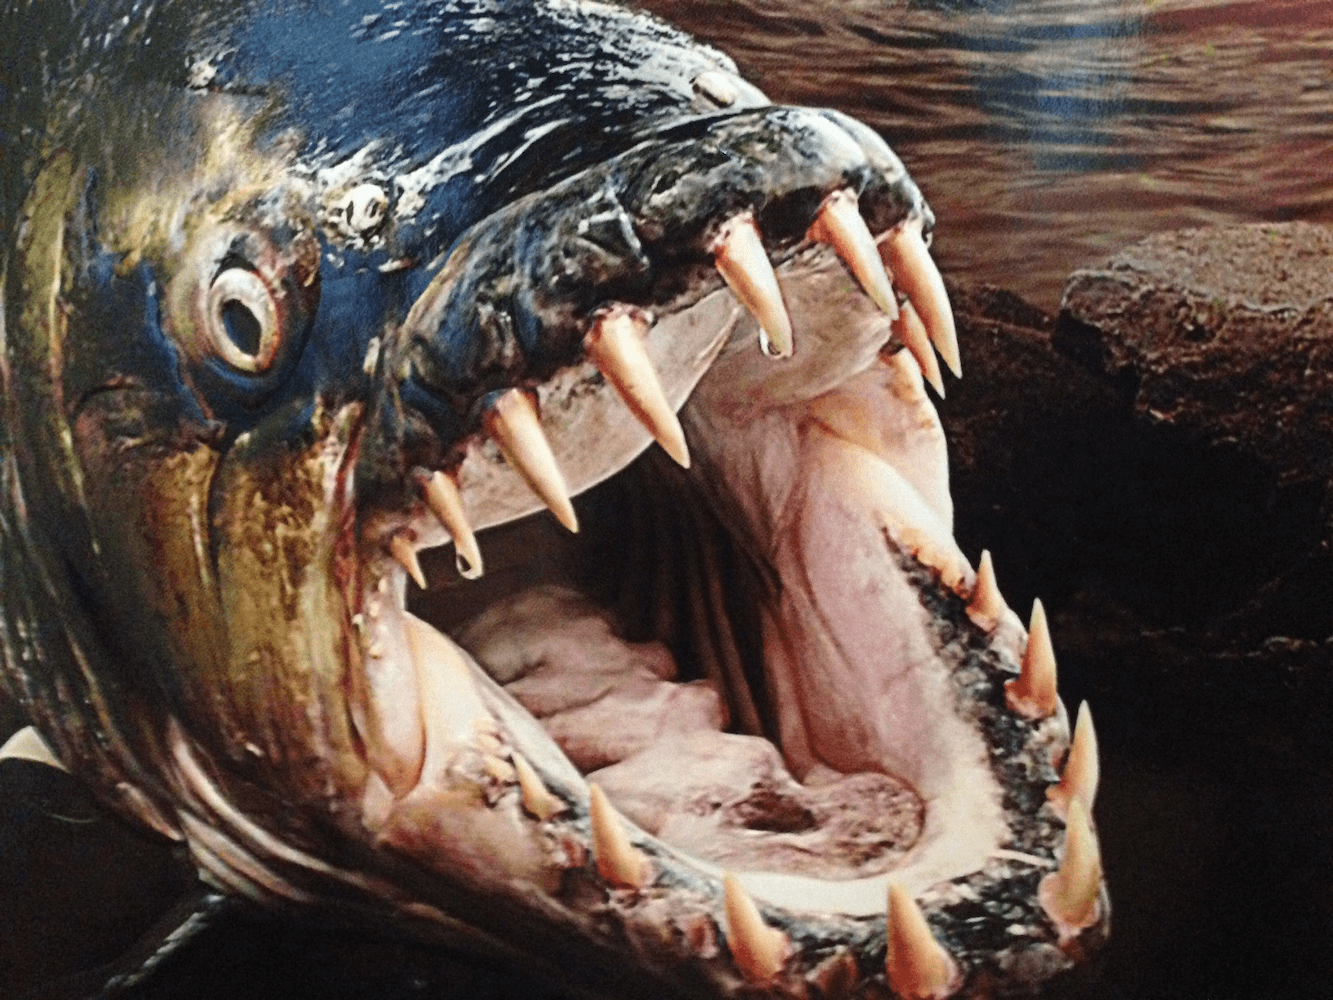 terrifying fish